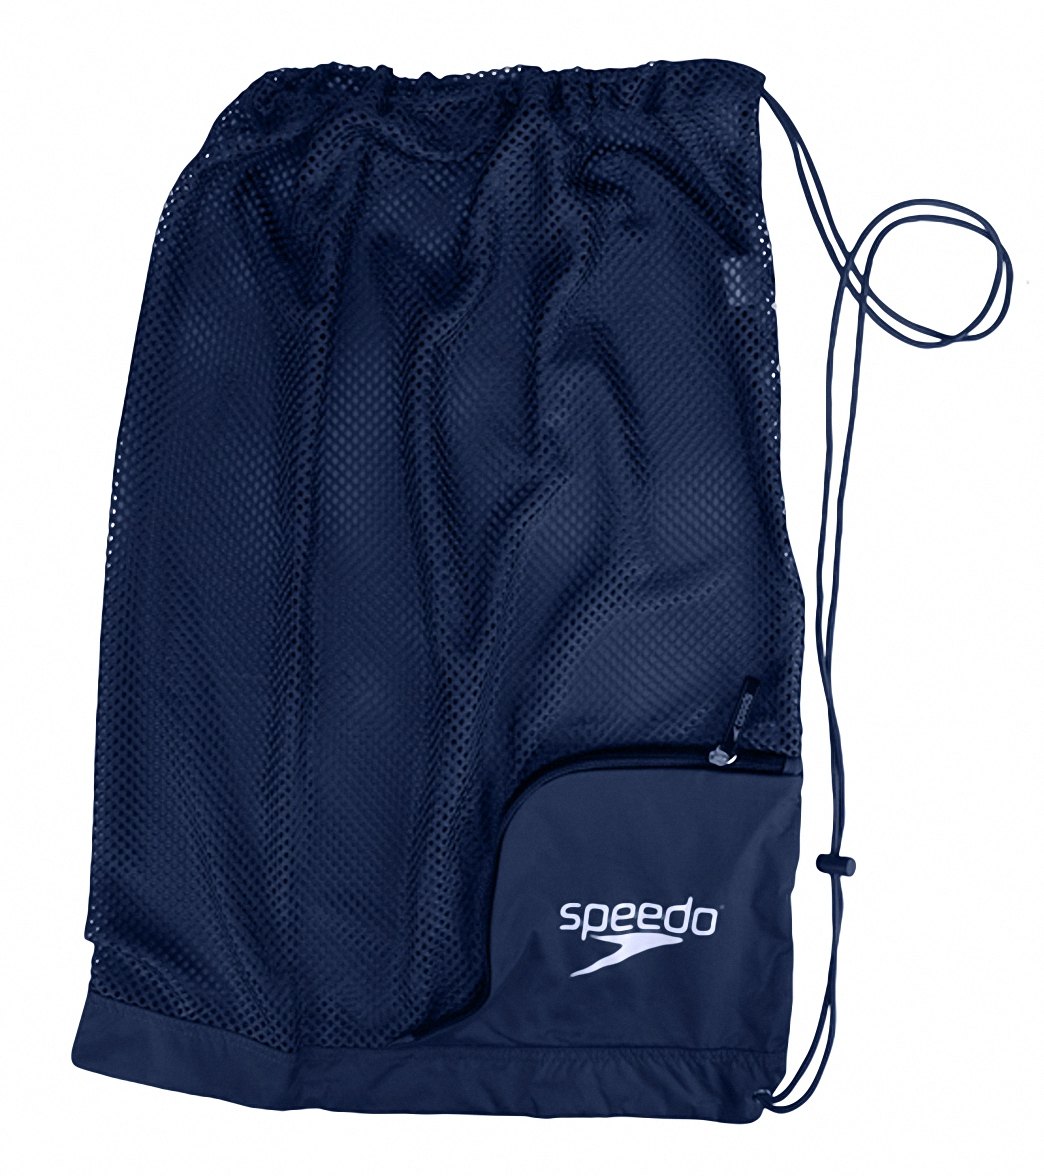 Speedo Ventilator Mesh Bag - Insignia Blue - Swimoutlet.com